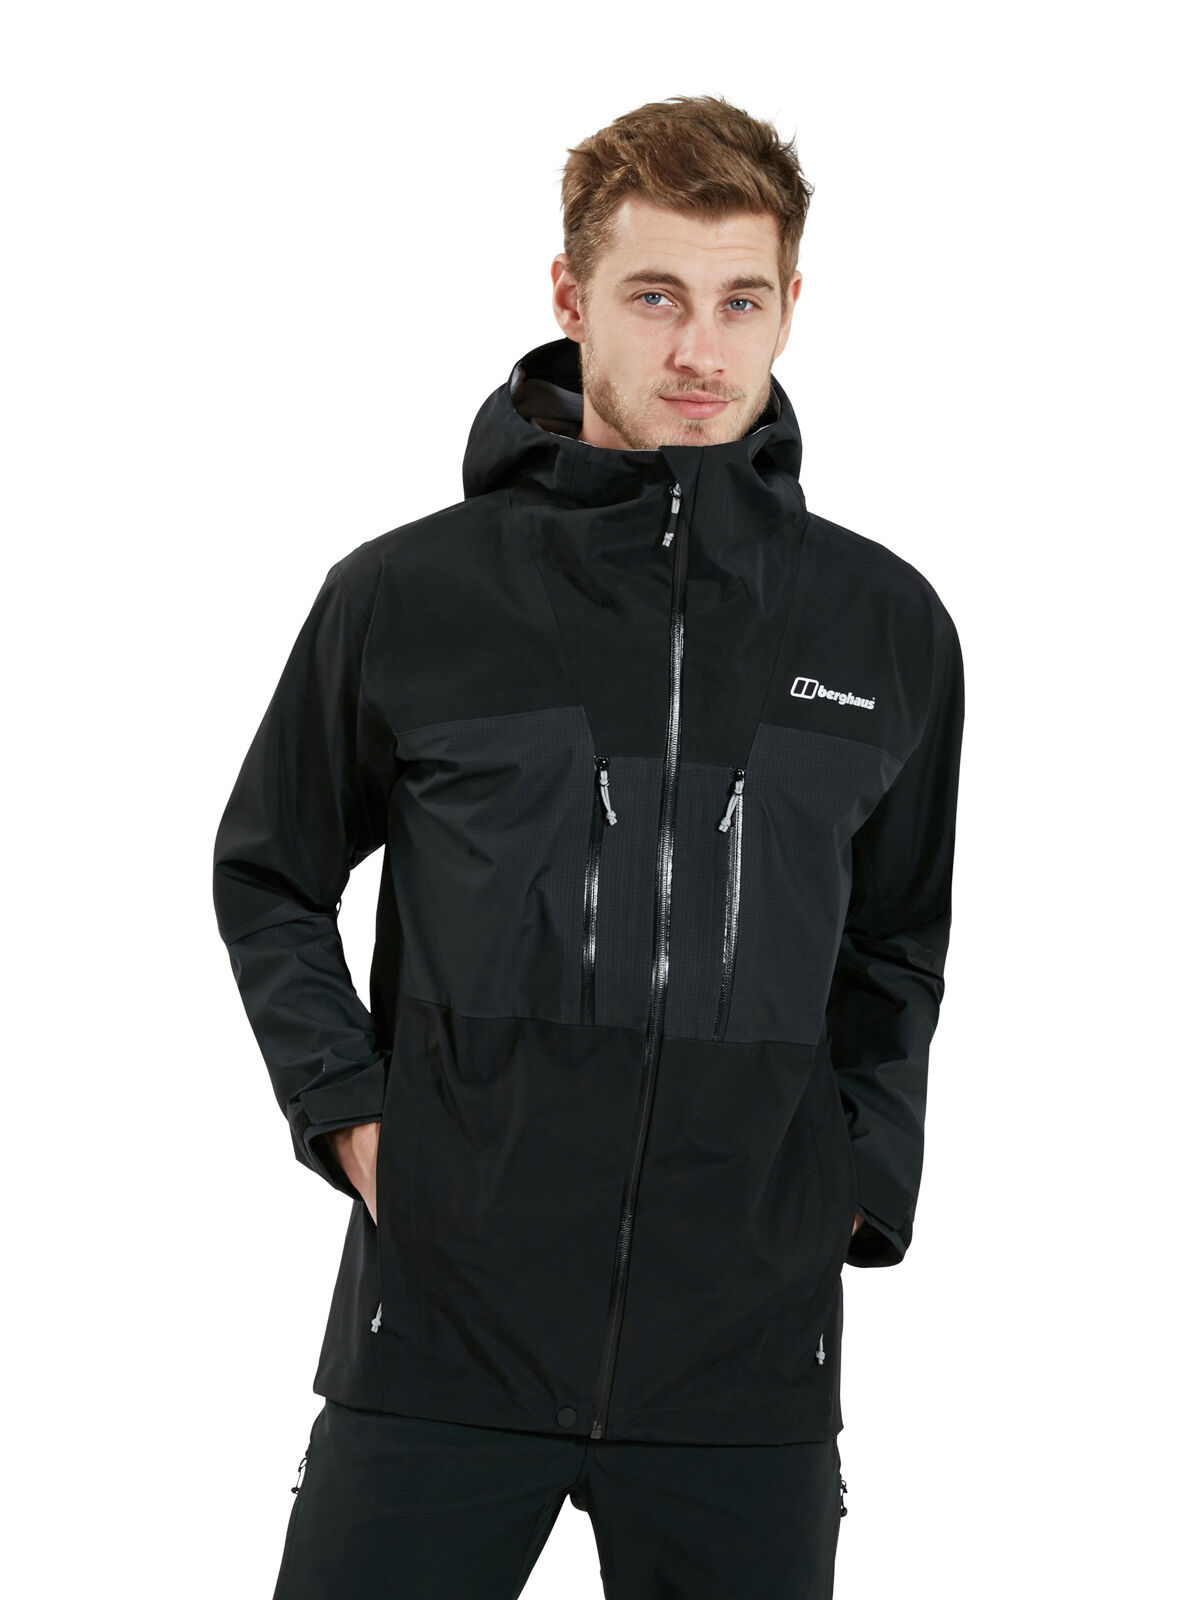 Berghaus Ridgemaster 3L Jacket - Waterproof jacket - Men's